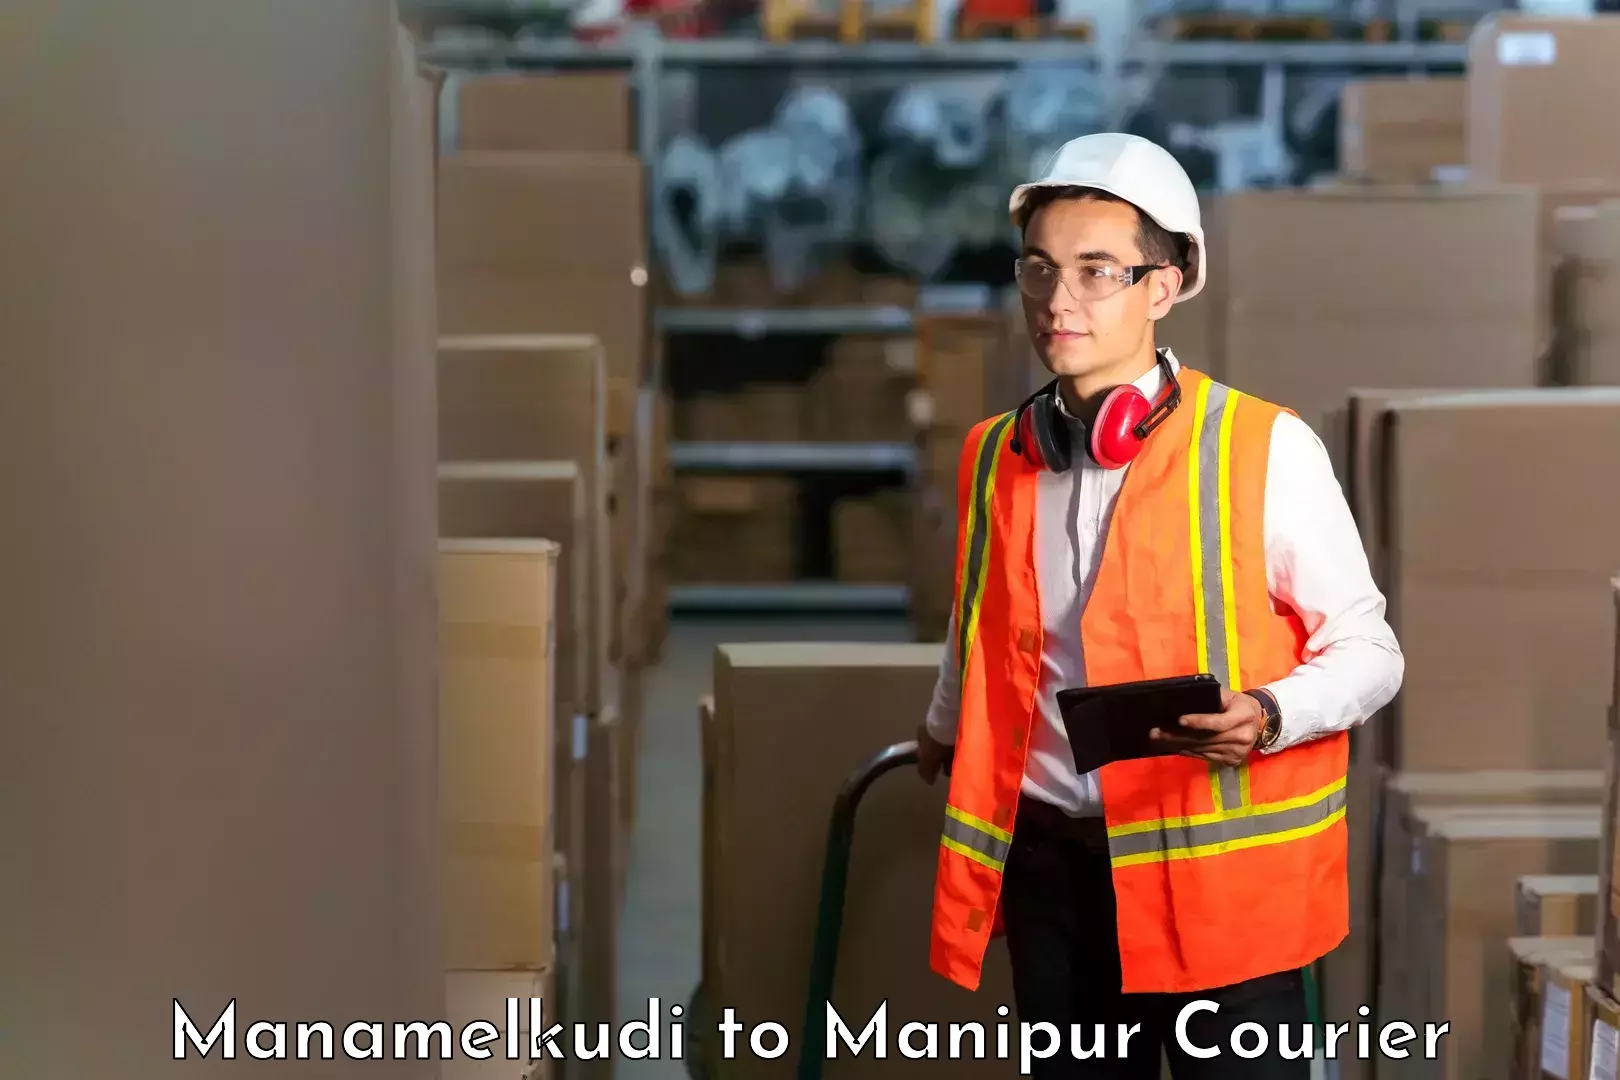 Smart shipping technology Manamelkudi to Thoubal